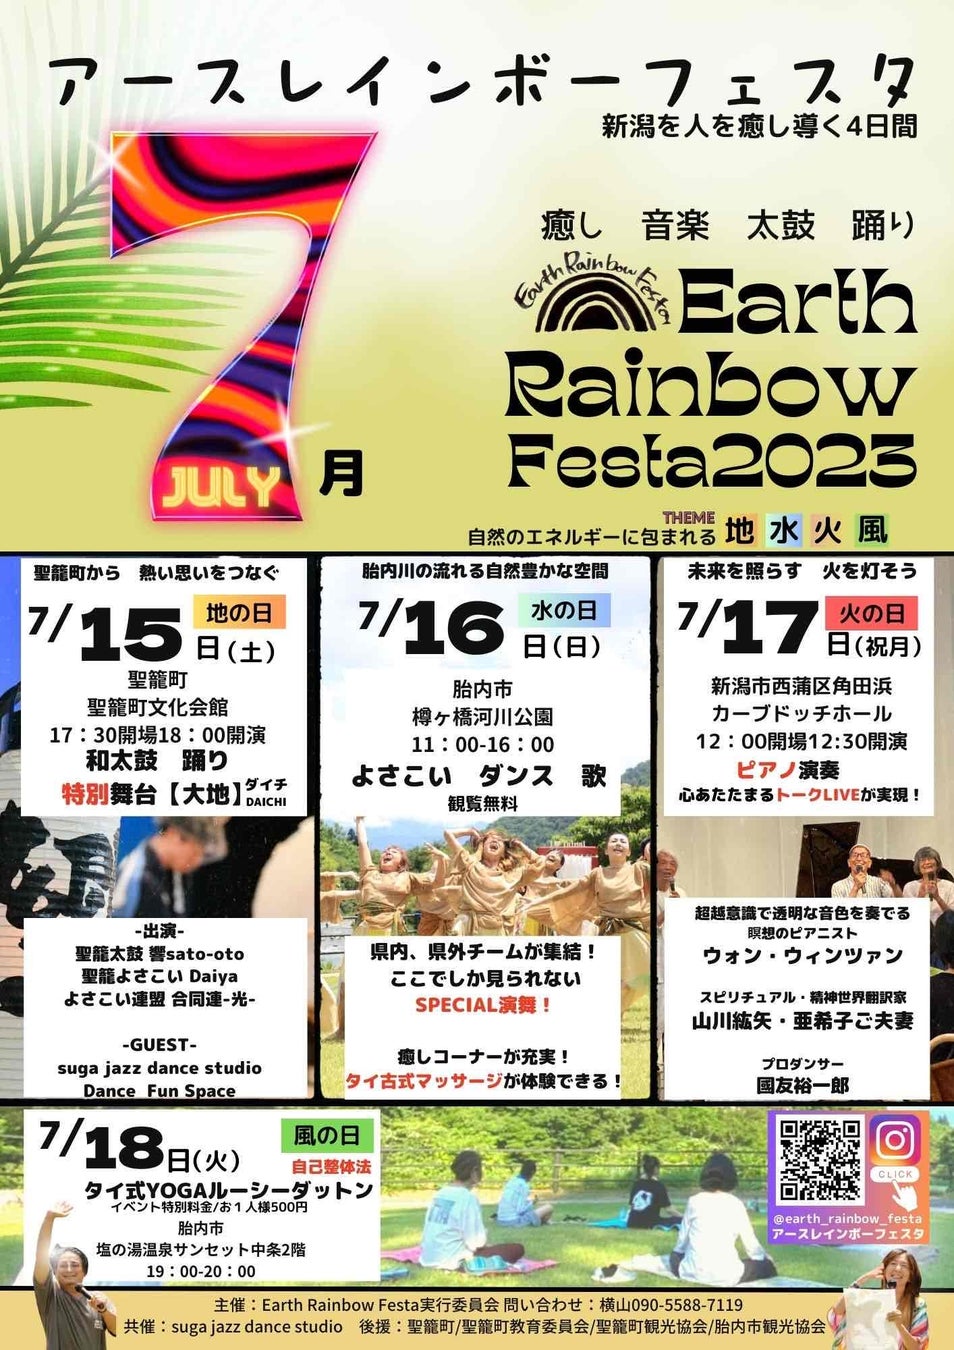 音楽、太鼓、踊りの力強いステージの数々！『Earth Rainbow Festa2023　～新潟を人を癒すスペシャル舞台～』を新潟県聖籠町で開催